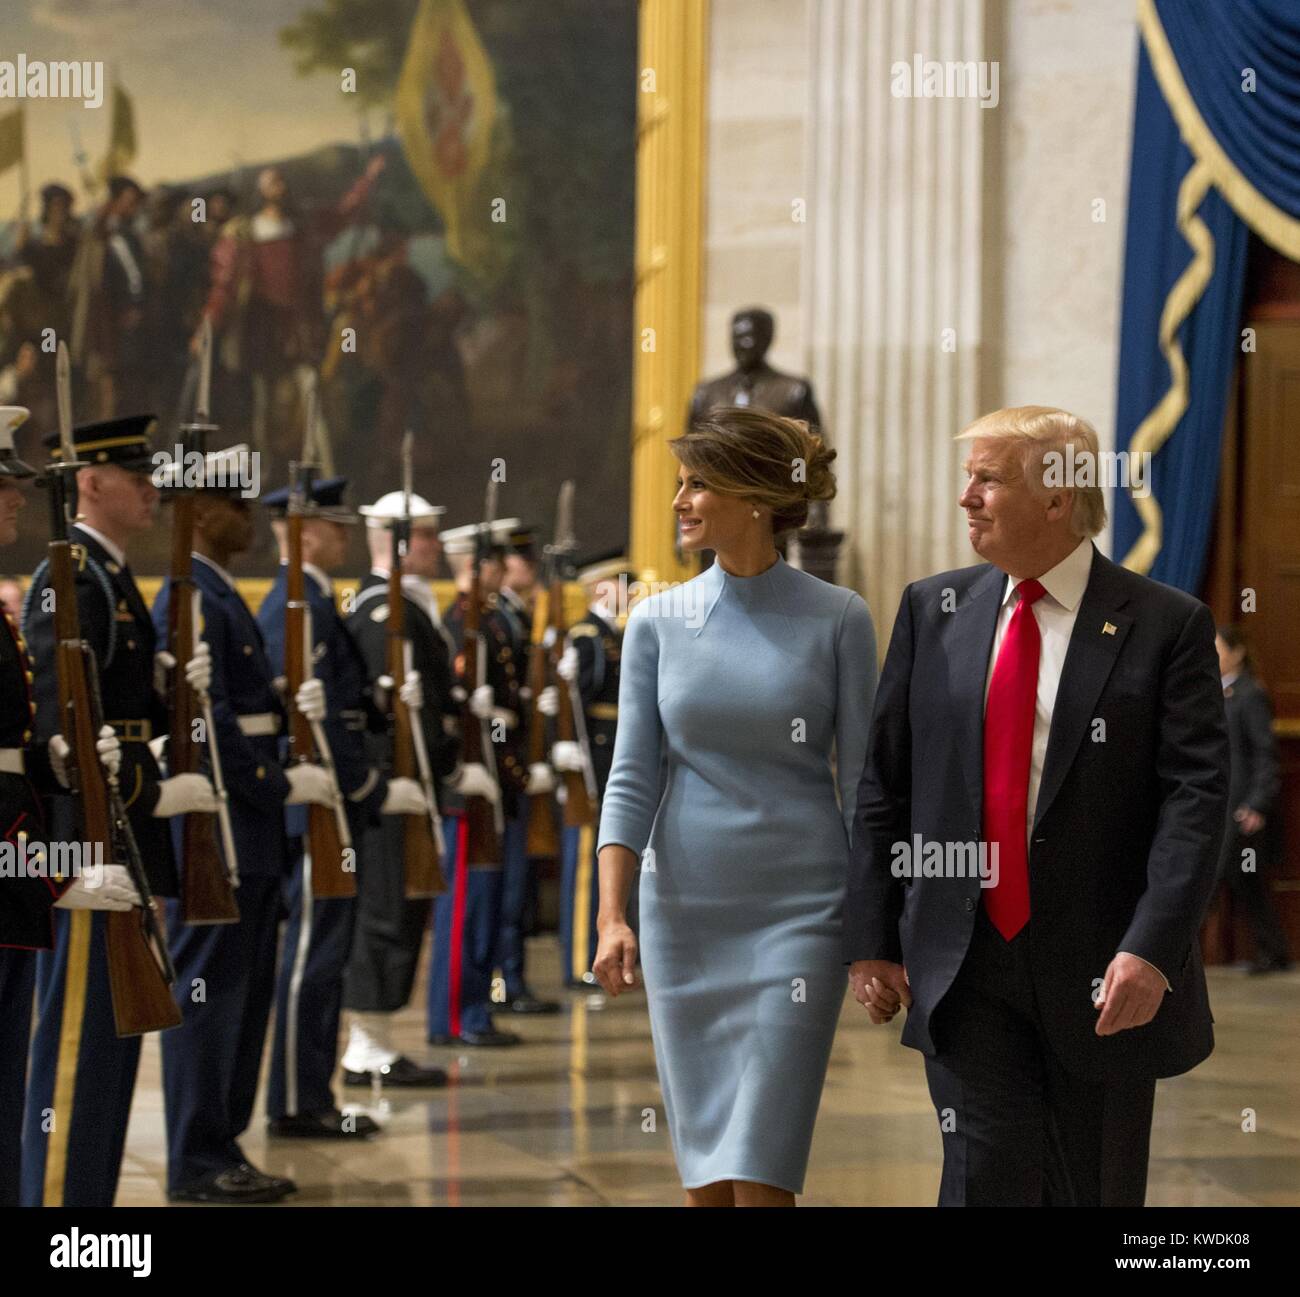 Presidente Donald Trump e la First Lady Melania Trump a piedi attraverso un forze congiunte onore cordon. La prima donna indossa una polvere guaina blu vestito disegnato da Ralph Lauren nella rotonda del Campidoglio dopo la cerimonia di inaugurazione a gennaio 20, 2017 (BSLOC 2017 18 123) Foto Stock